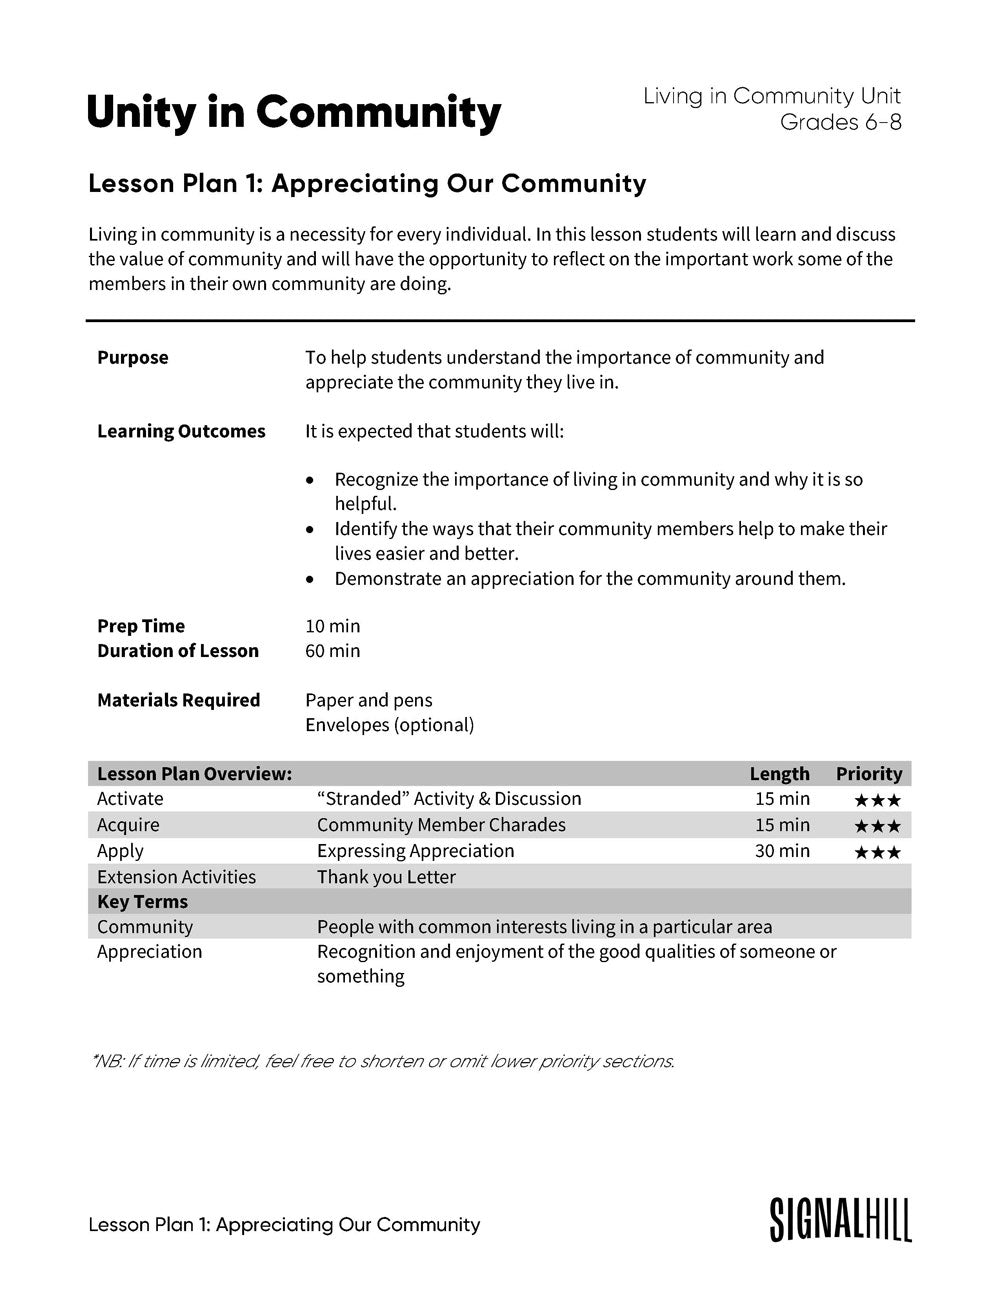 Unity in Community - Lesson Plan Bundle (4 Lesson Plans)